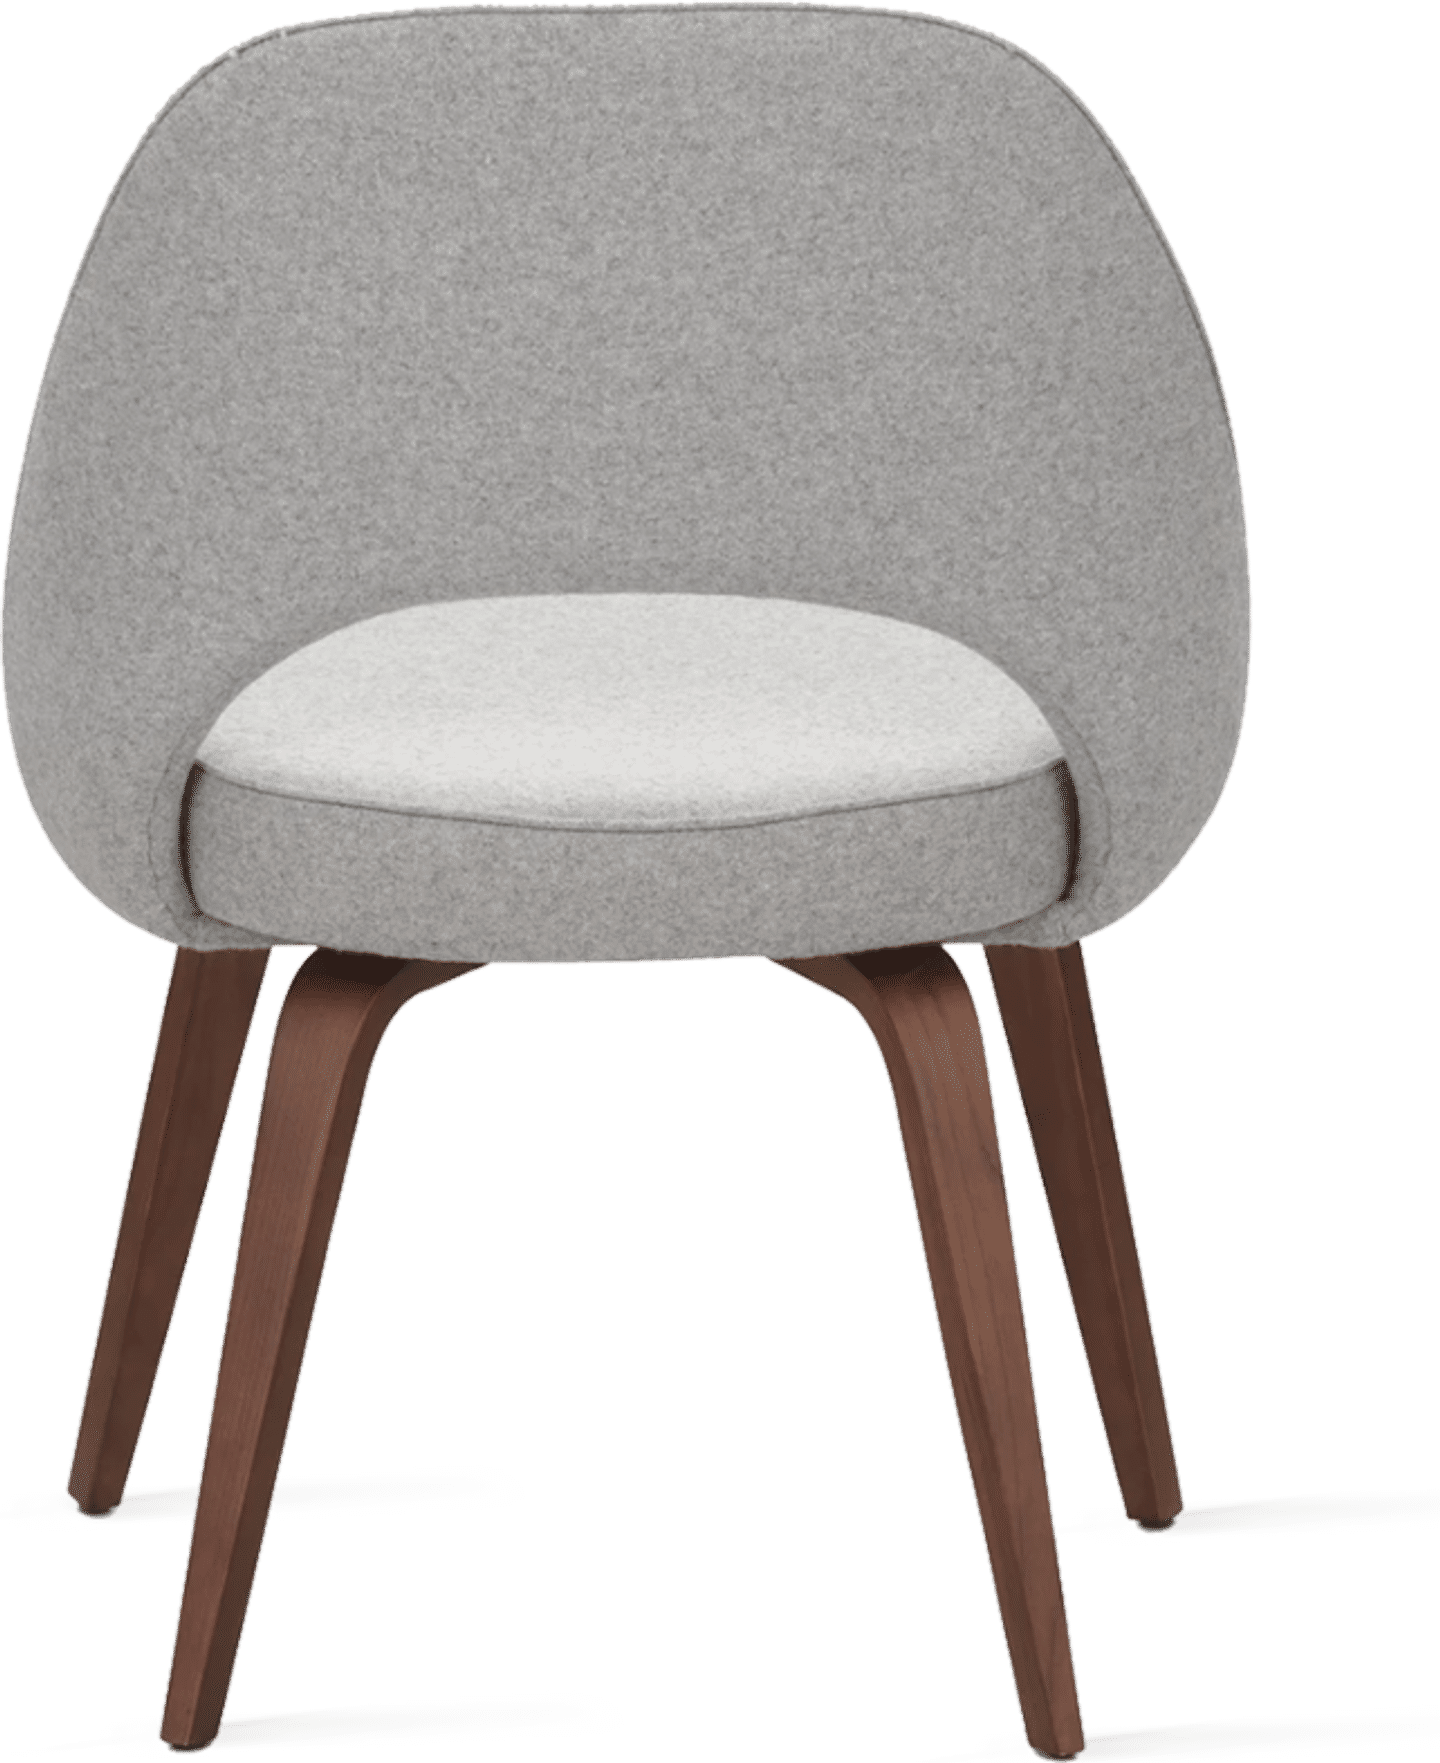 Executive Chair Armless Light Pebble Grey image.